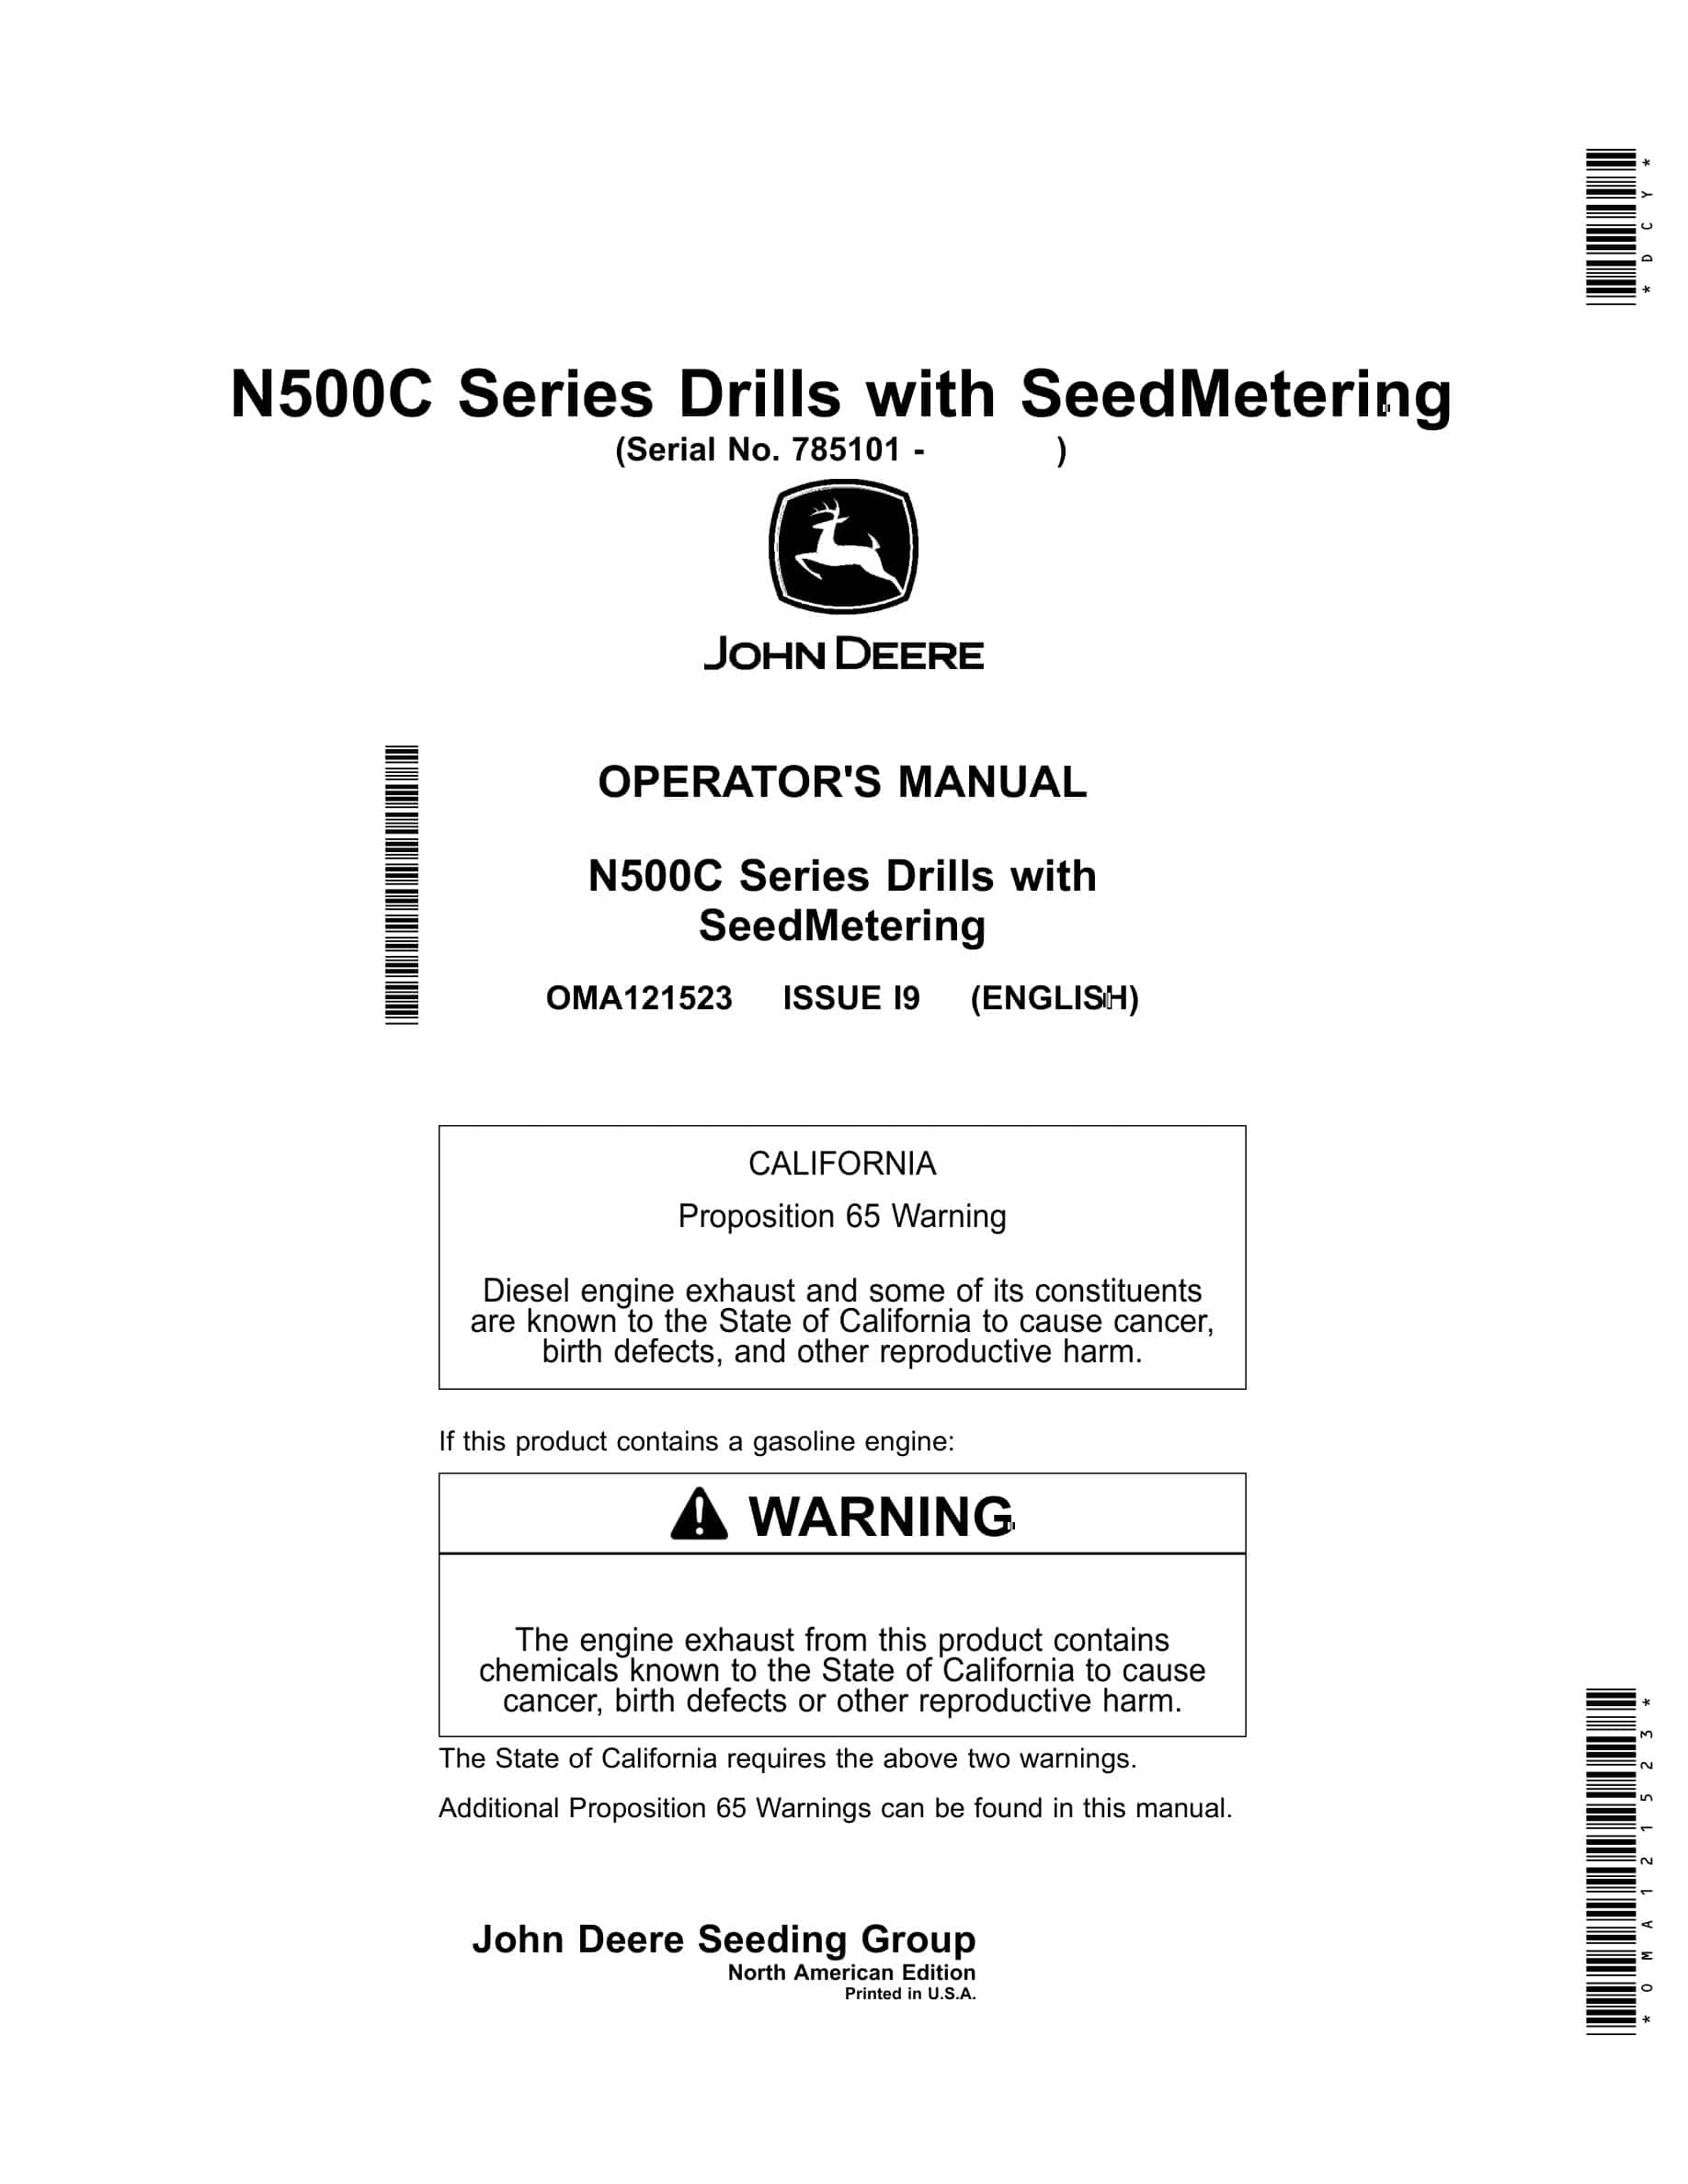 John Deere N500C Series Drill with SeedMetering Operator Manual OMA121523-1